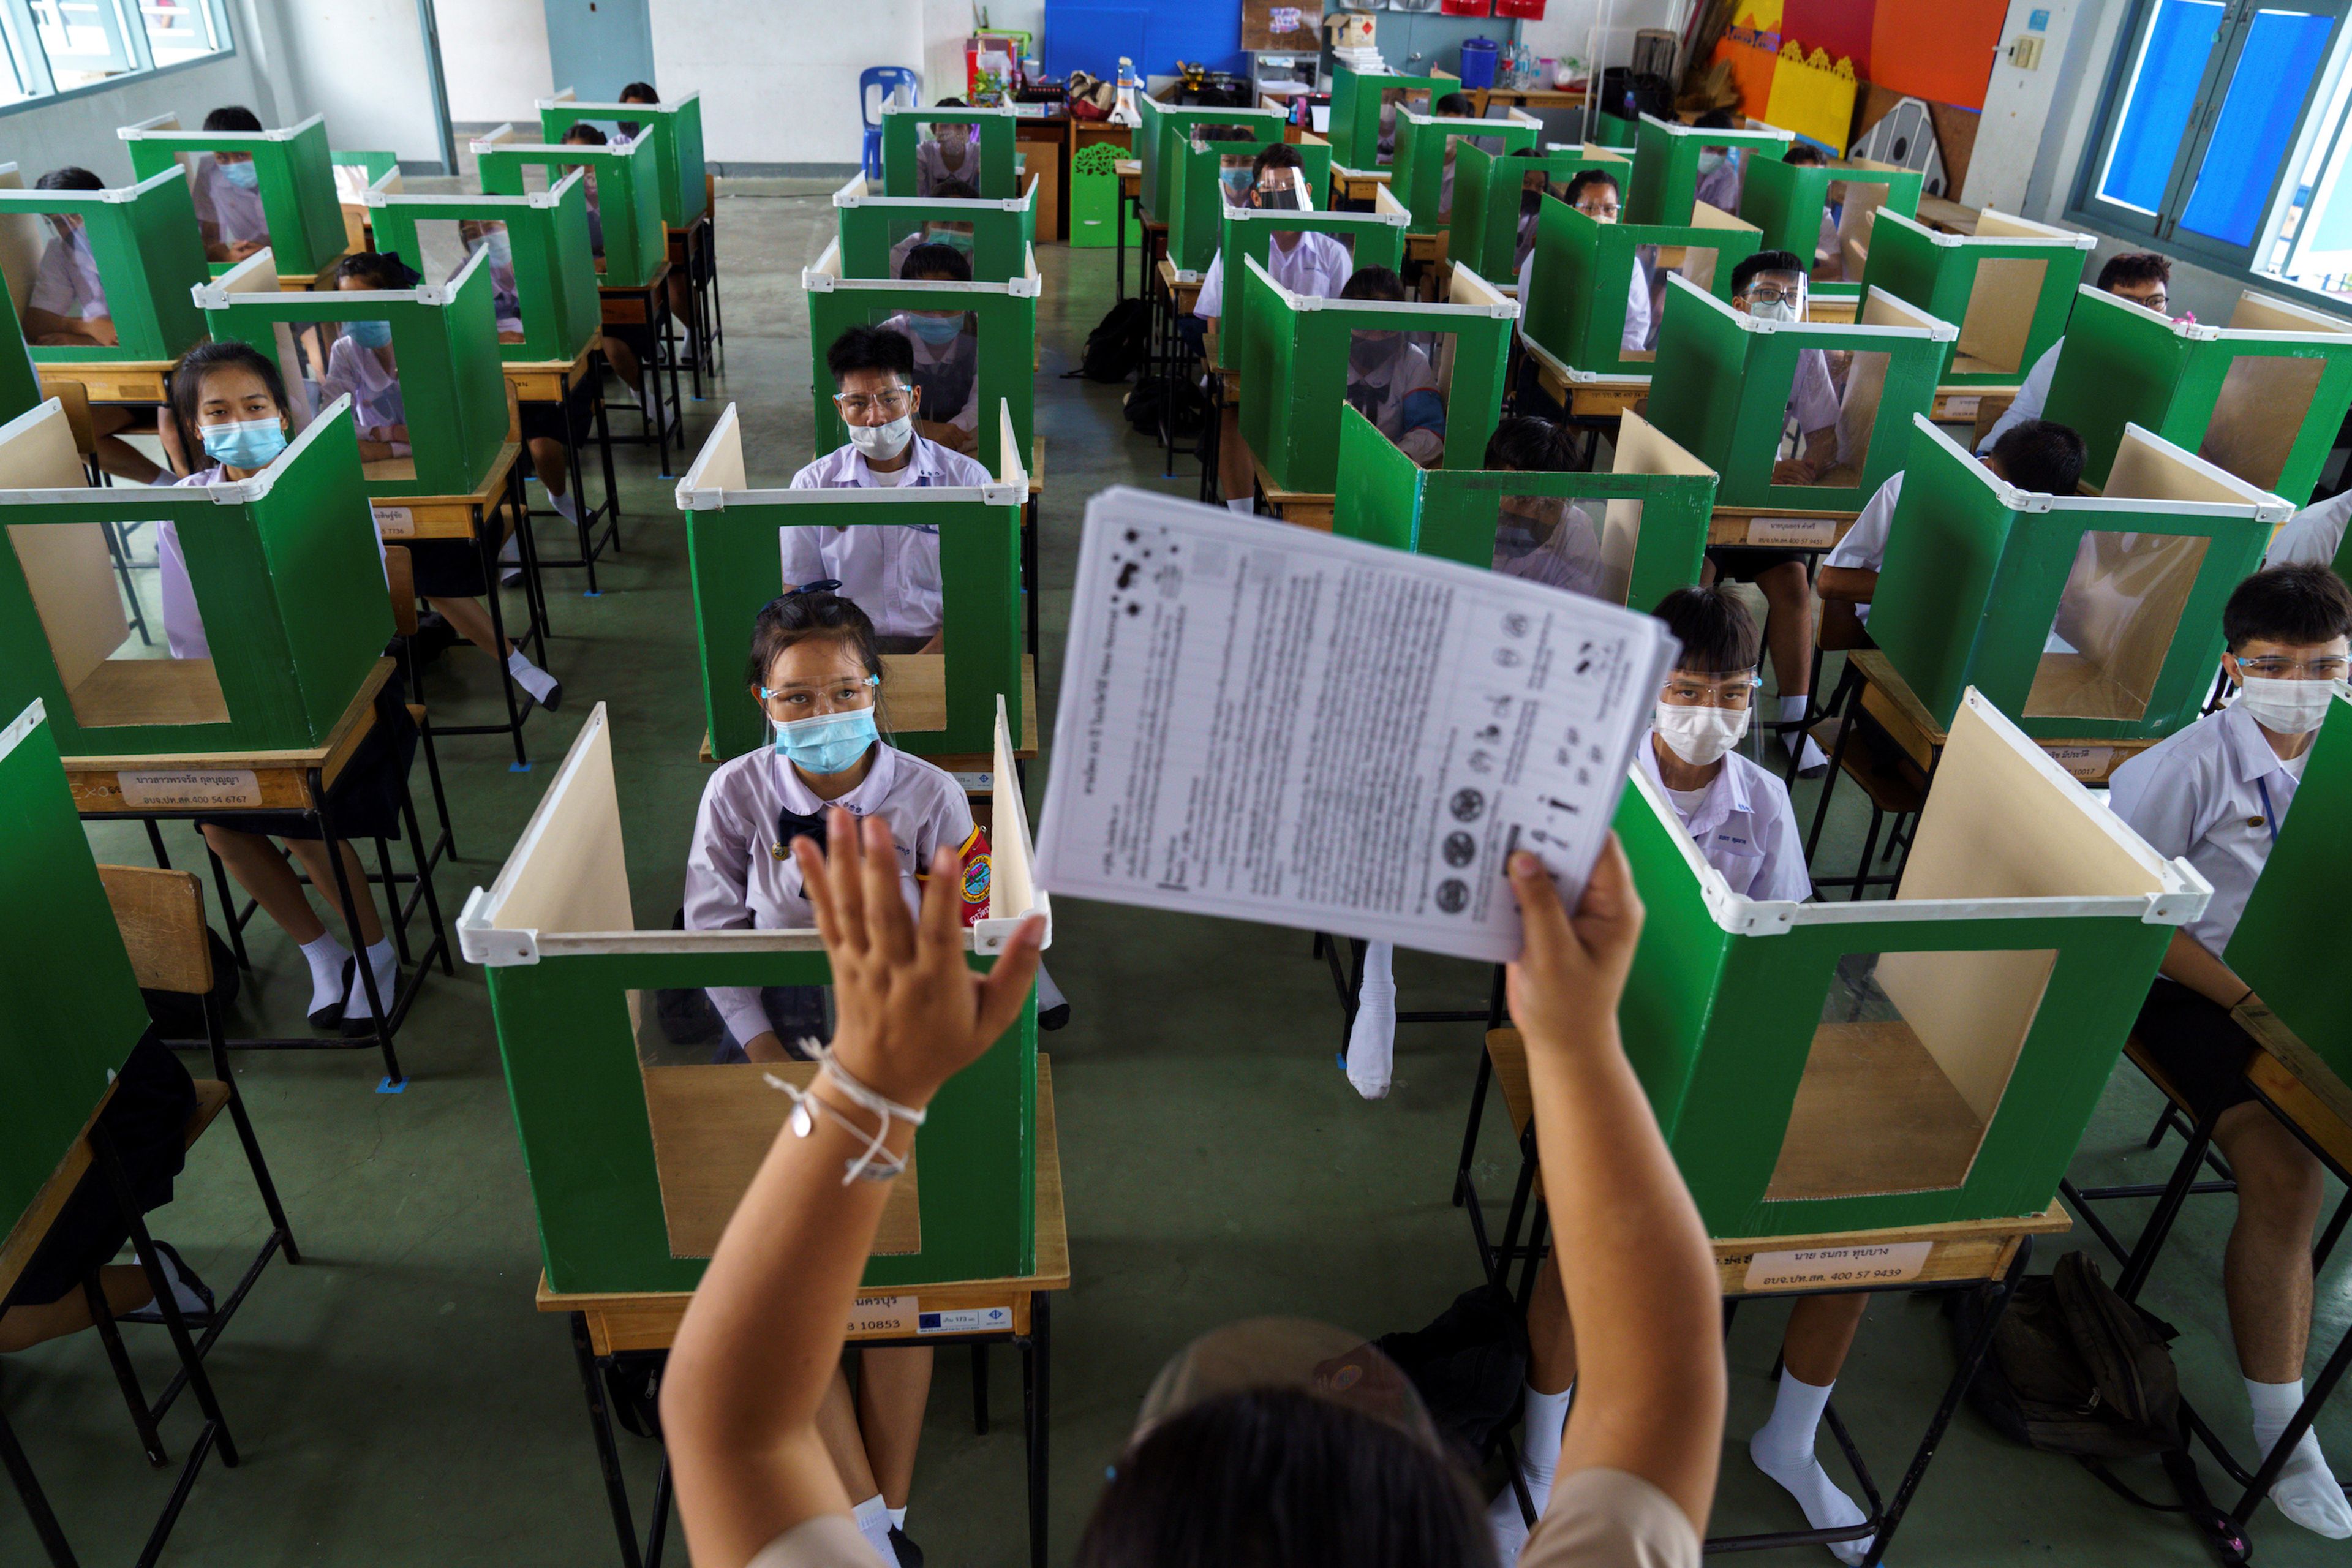 Una escuela de Tailandia reabre tras la pandemia del coronavirus con medidas de distanciamiento físico entre los alumnos.